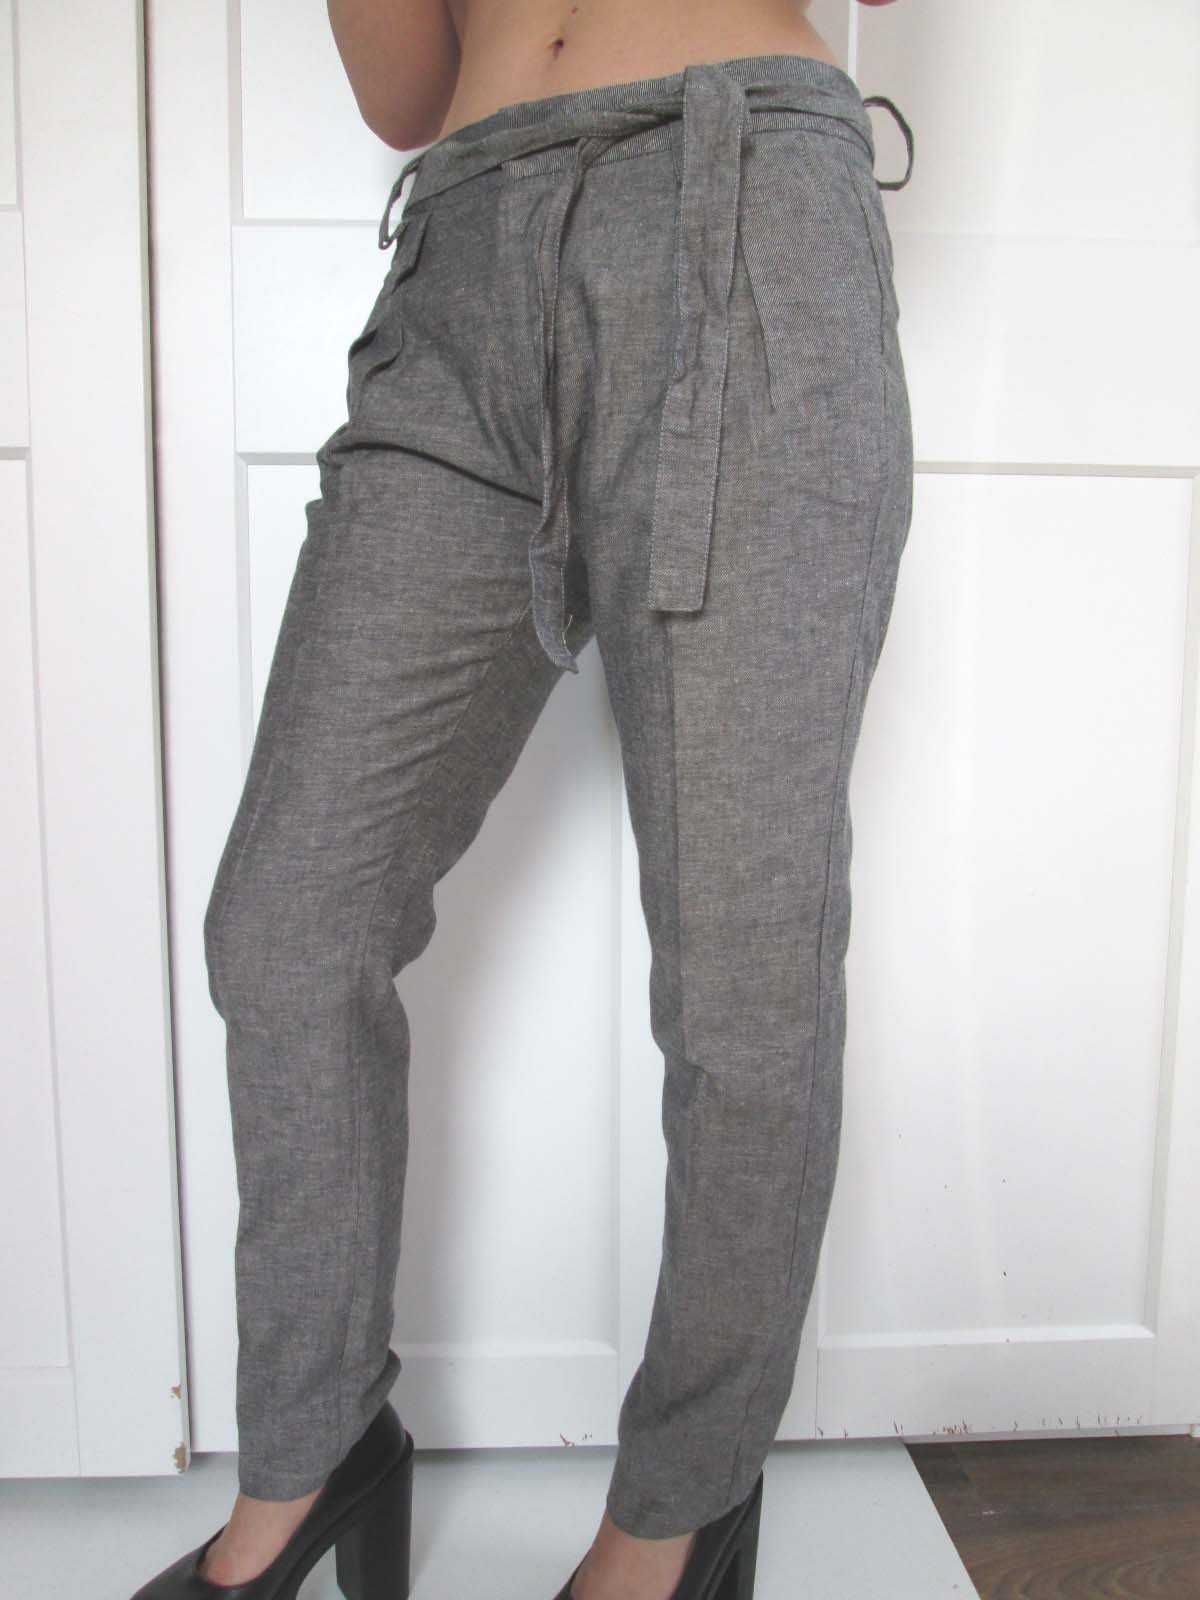 Theraphy szare lniane spodnie vintage M L 38 40 NOWE